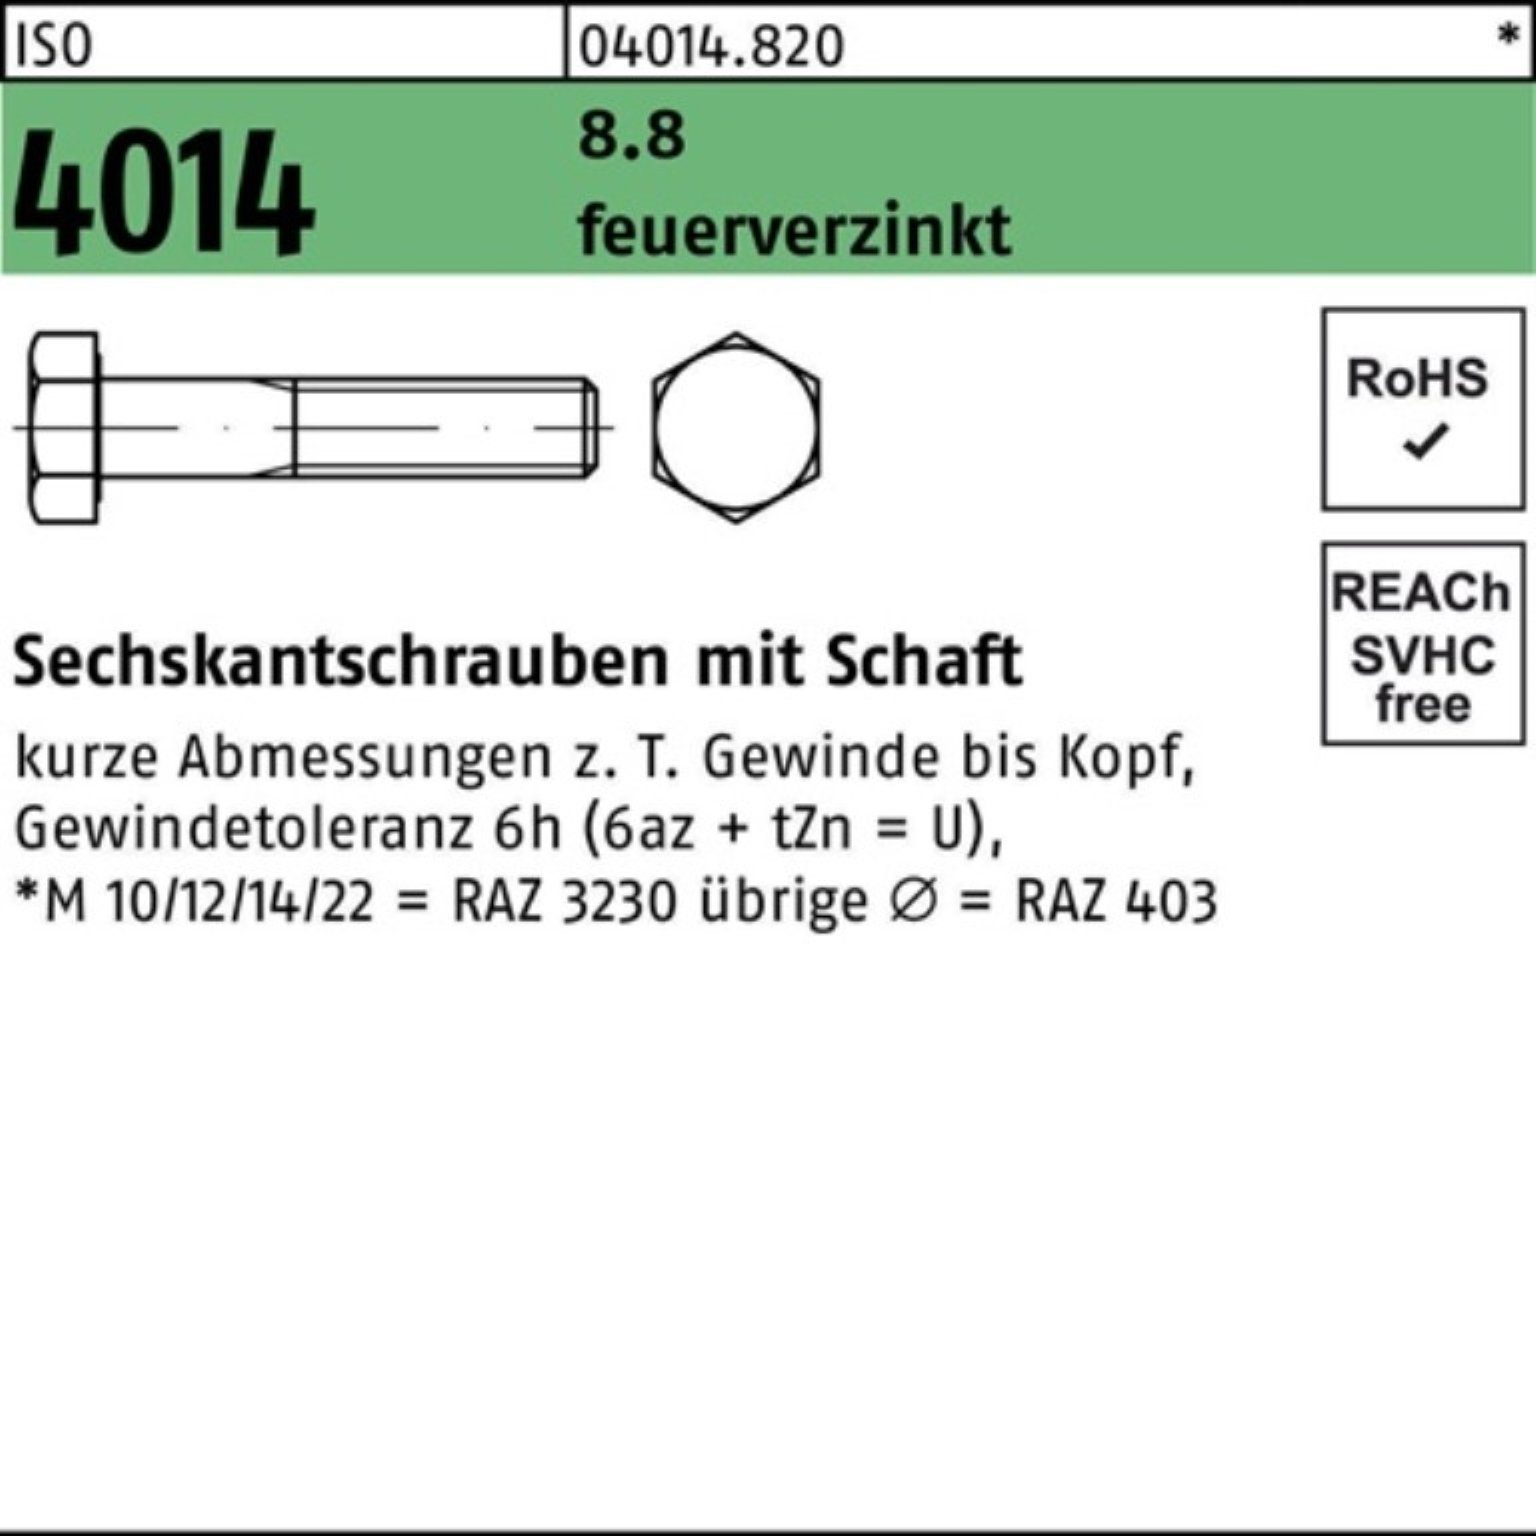 Pack Sechskantschraube 4014 M36x Bufab 8.8 Schaft ISO Sechskantschraube 190 feuerverz. 100er 1